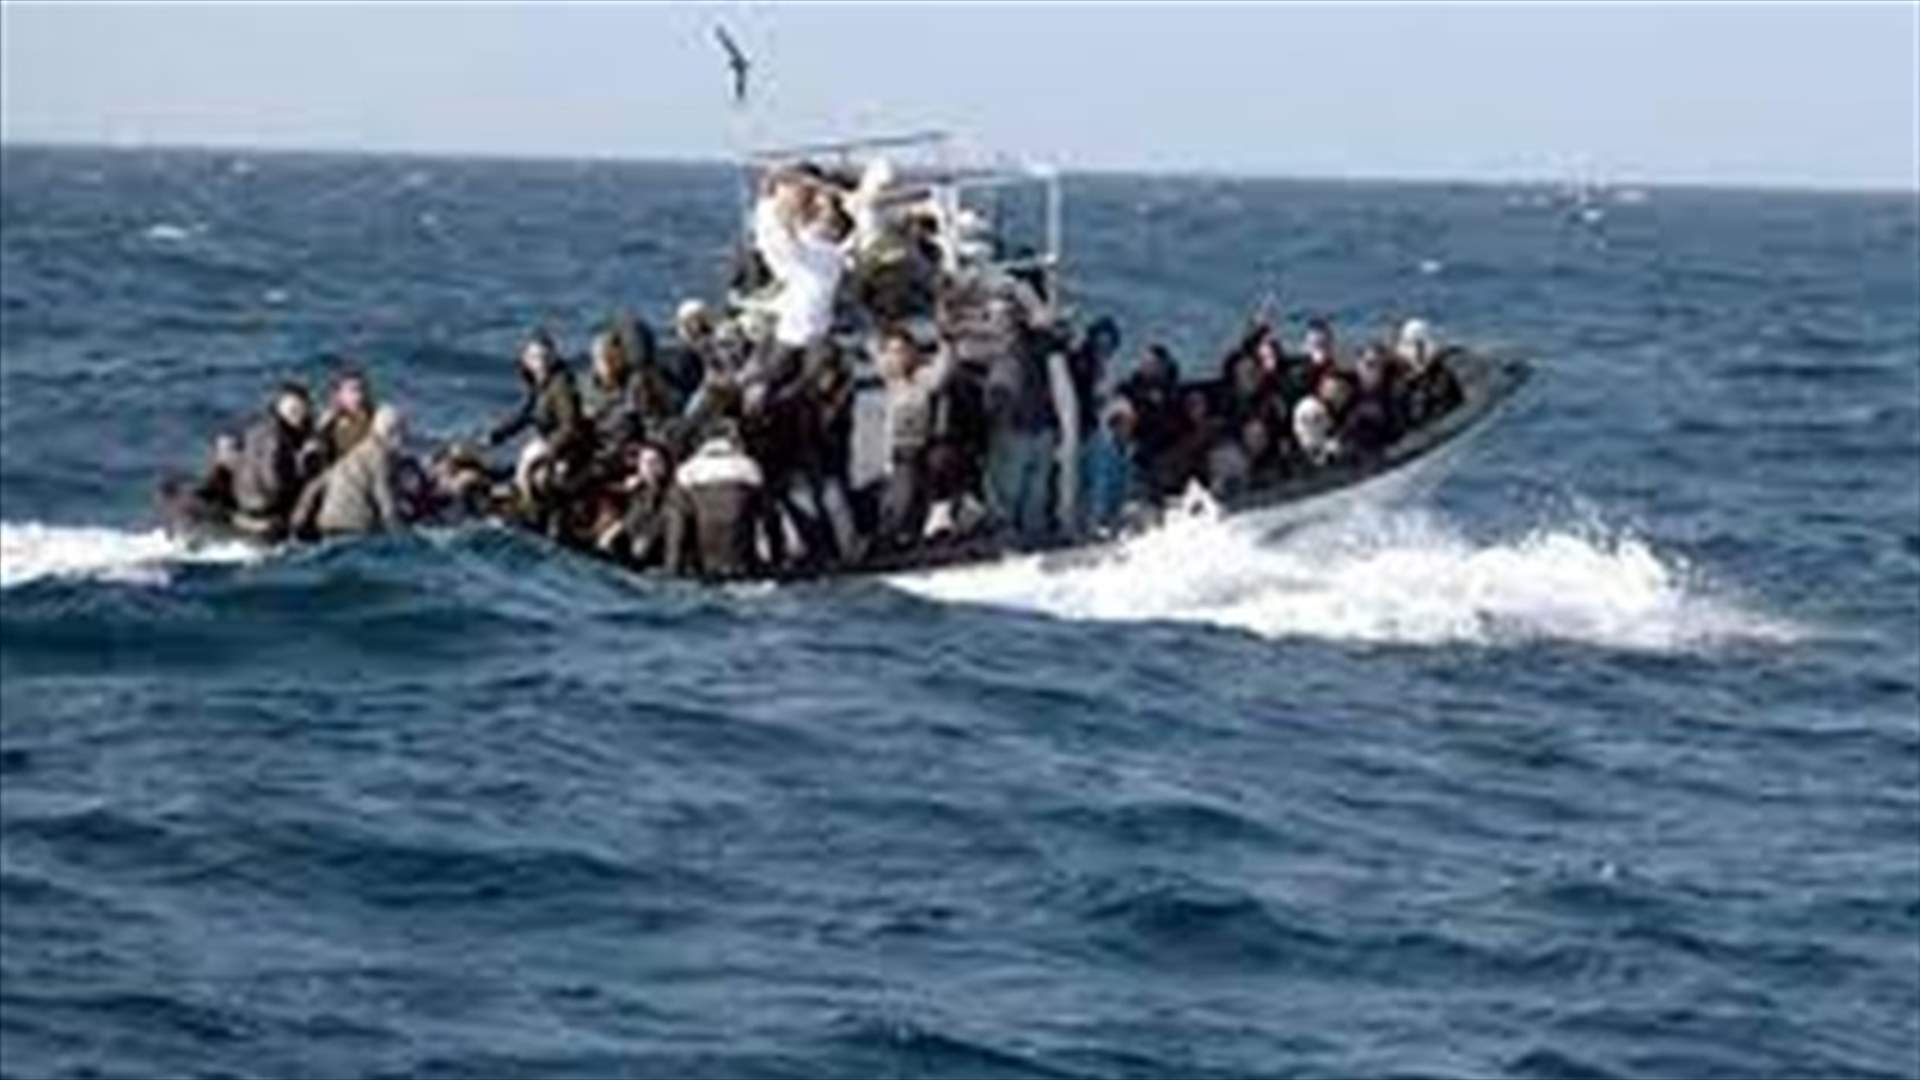 غرق مركب مهاجرين قبالة تركيا على متنه 45 شخصا